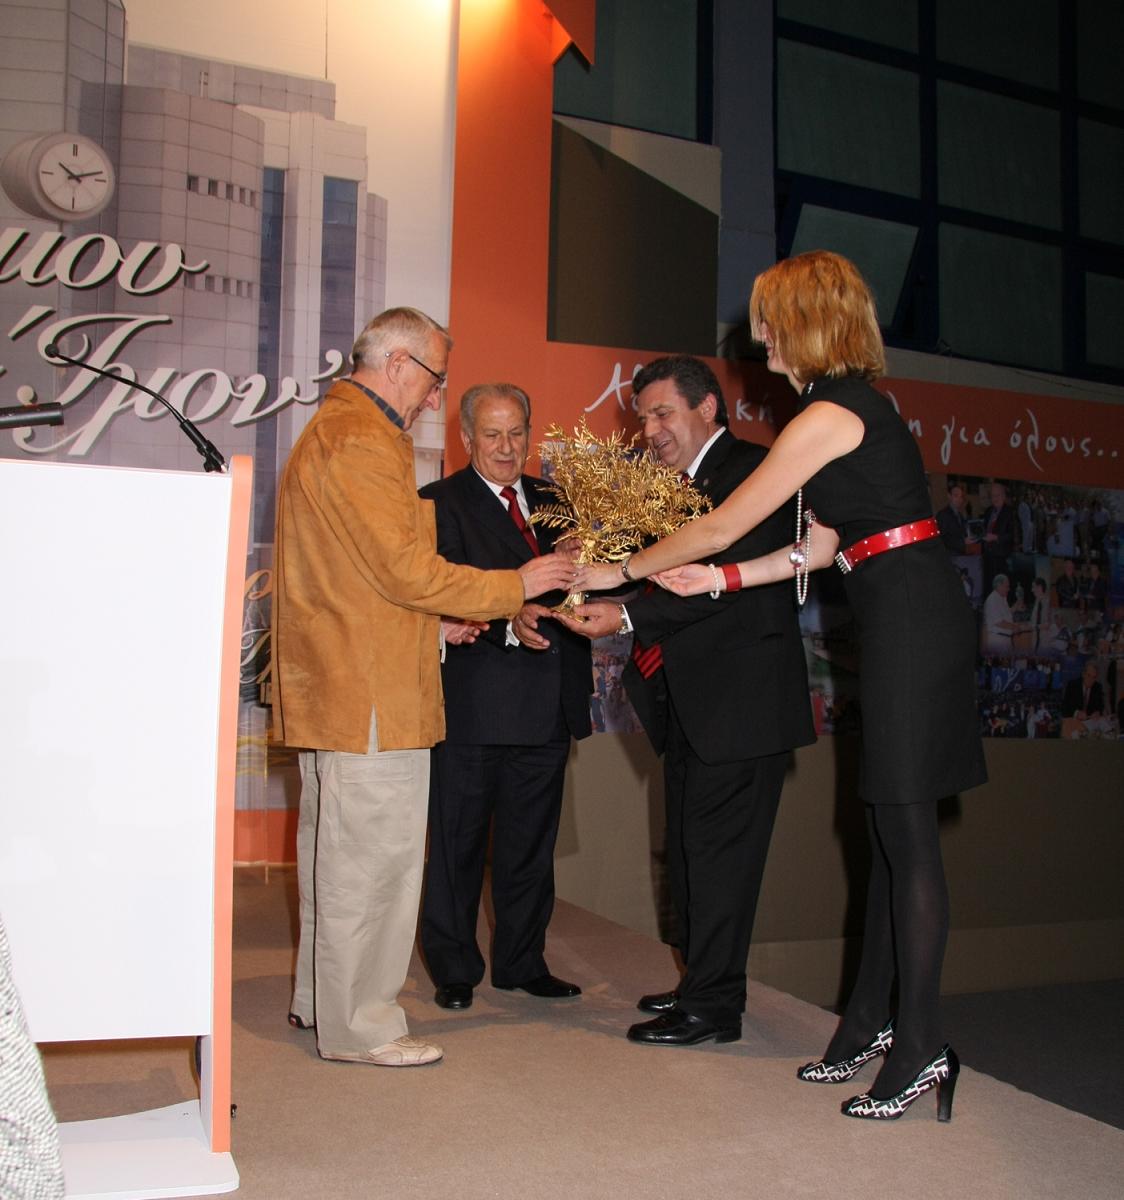 Ο Πρόεδρος της ΚΕΔΚΕ και ο Δήμαρχος Ιλίου απονέμουν το αναμνηστικό δώρο στον Β. Κουκουβίνο στην τιμητική εκδήλωση για την 24χρονη προσφορά του